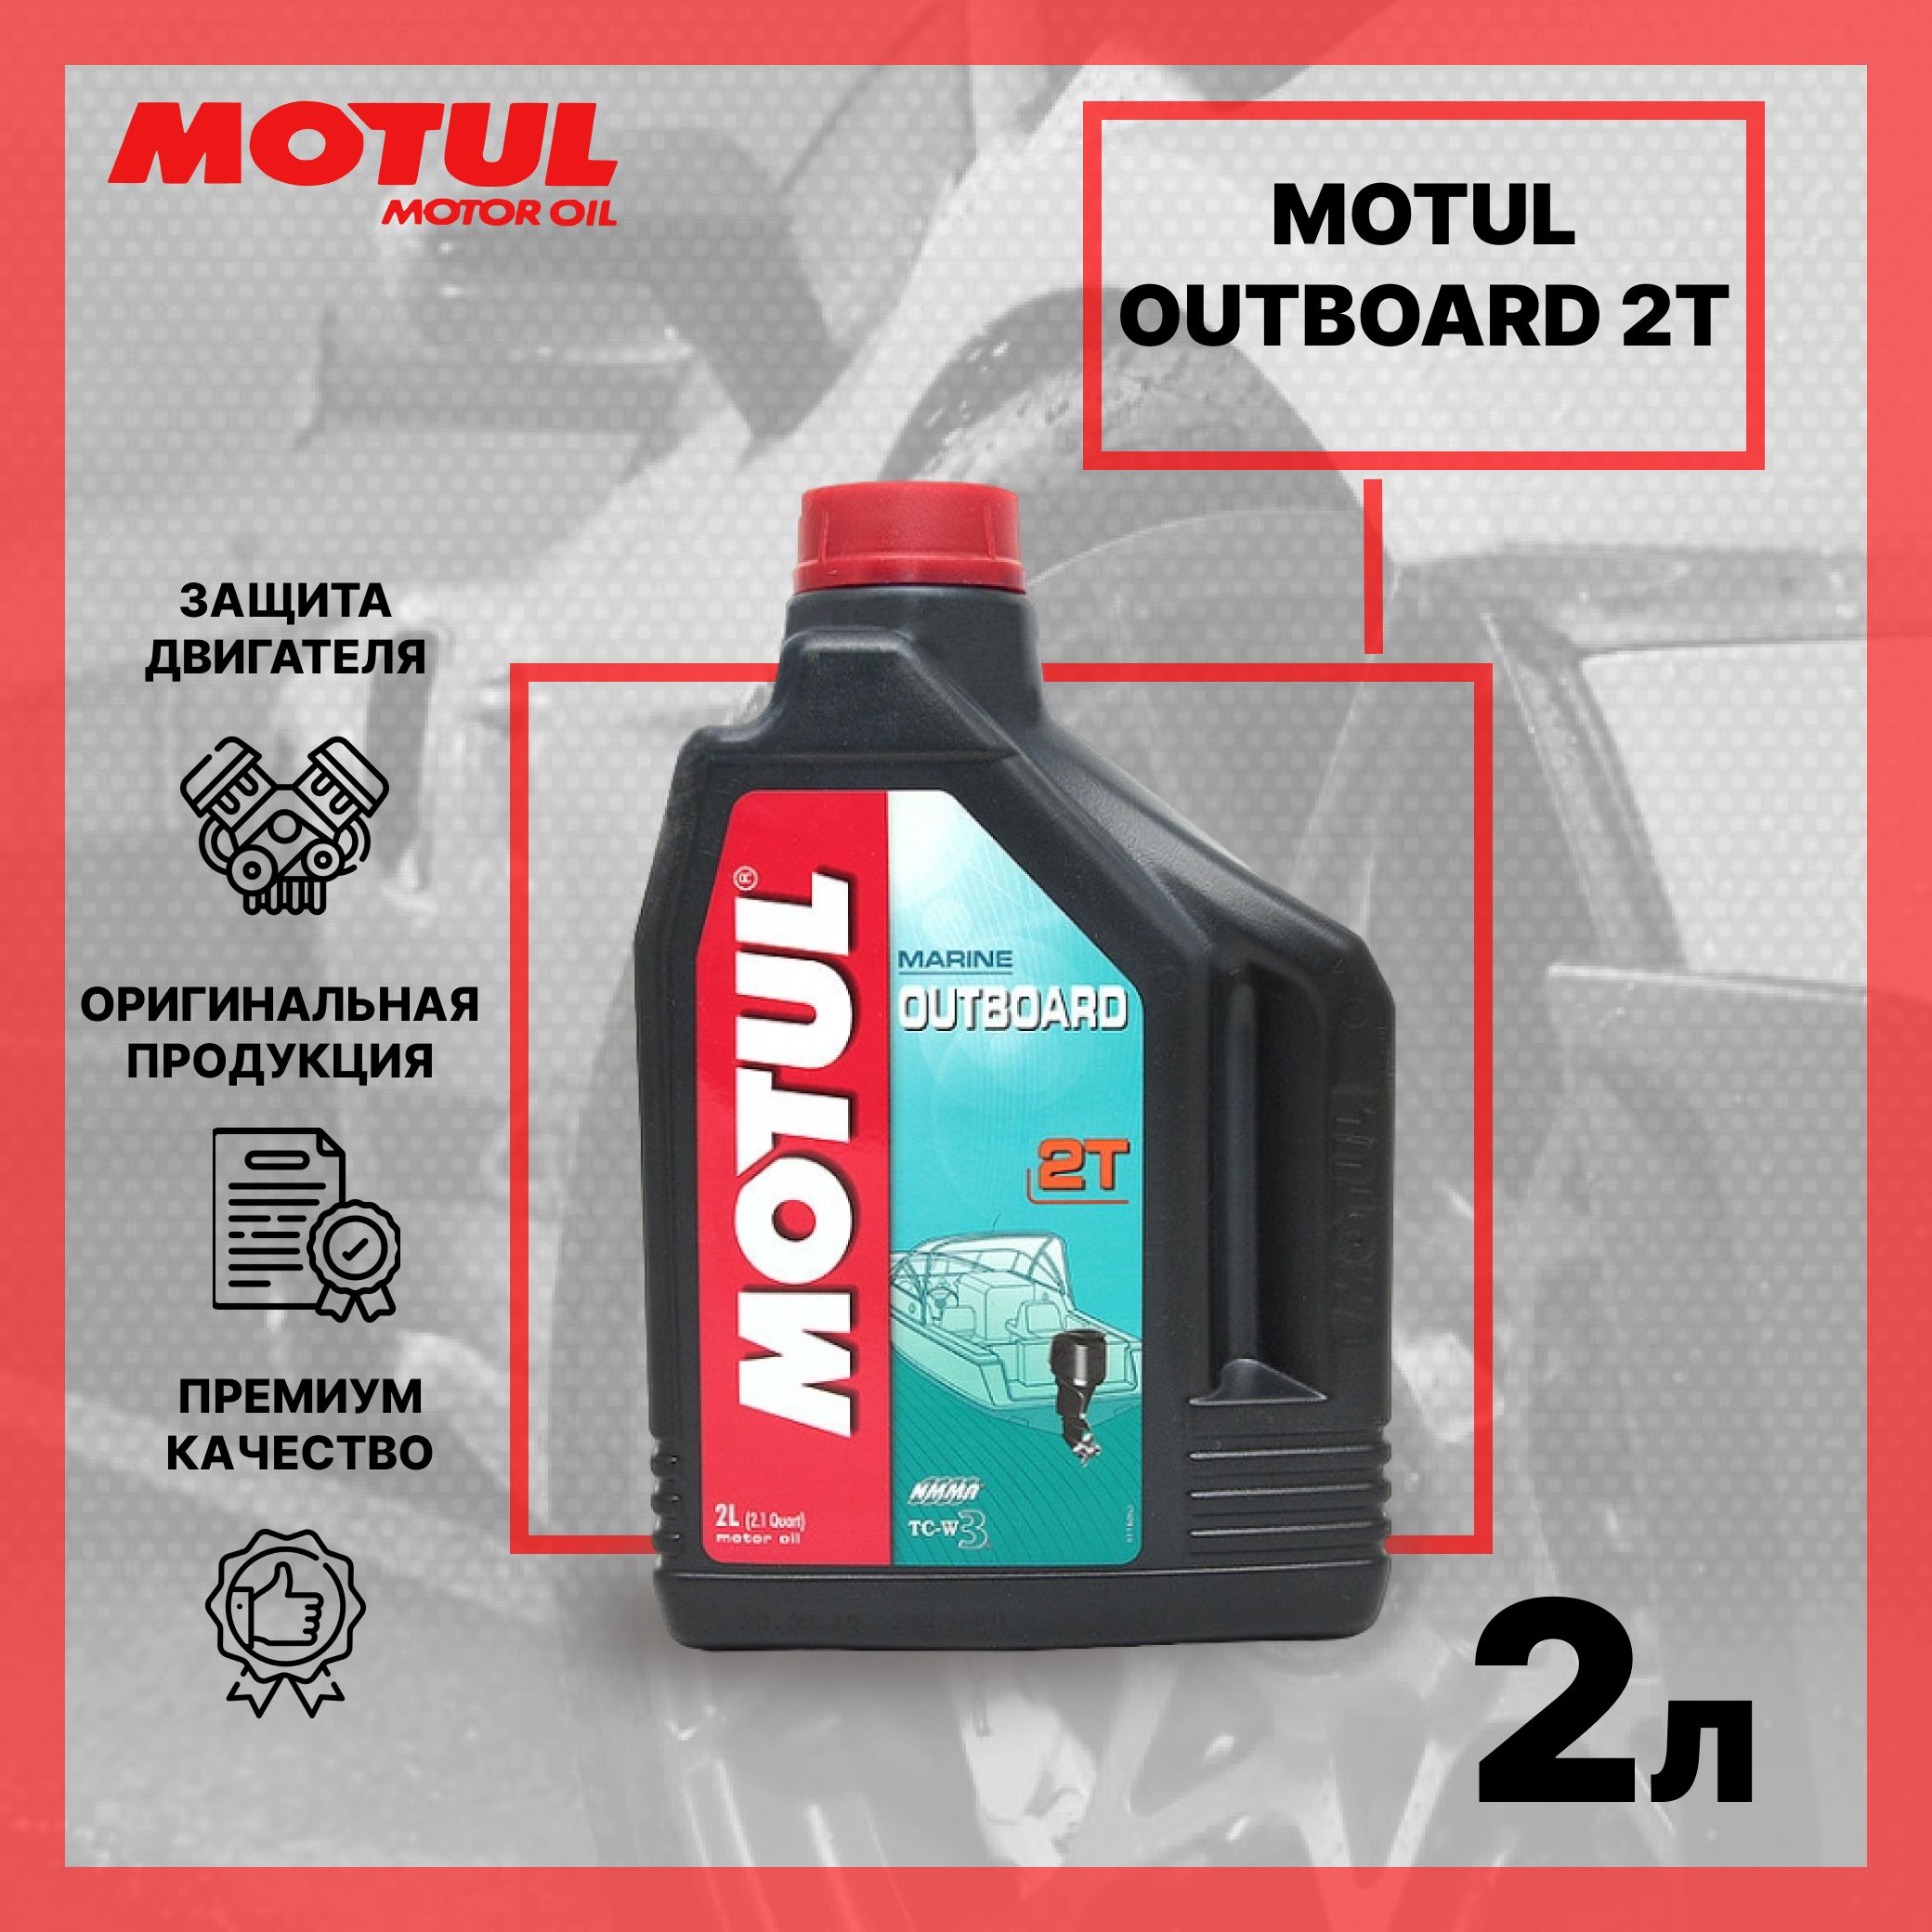 Купить мотюль для лодочных моторов. Motul outboard 2t. Масло мотюль outboard 2t. Motul outboard 2t 2 л. Motul outboard 2t Synthetic.